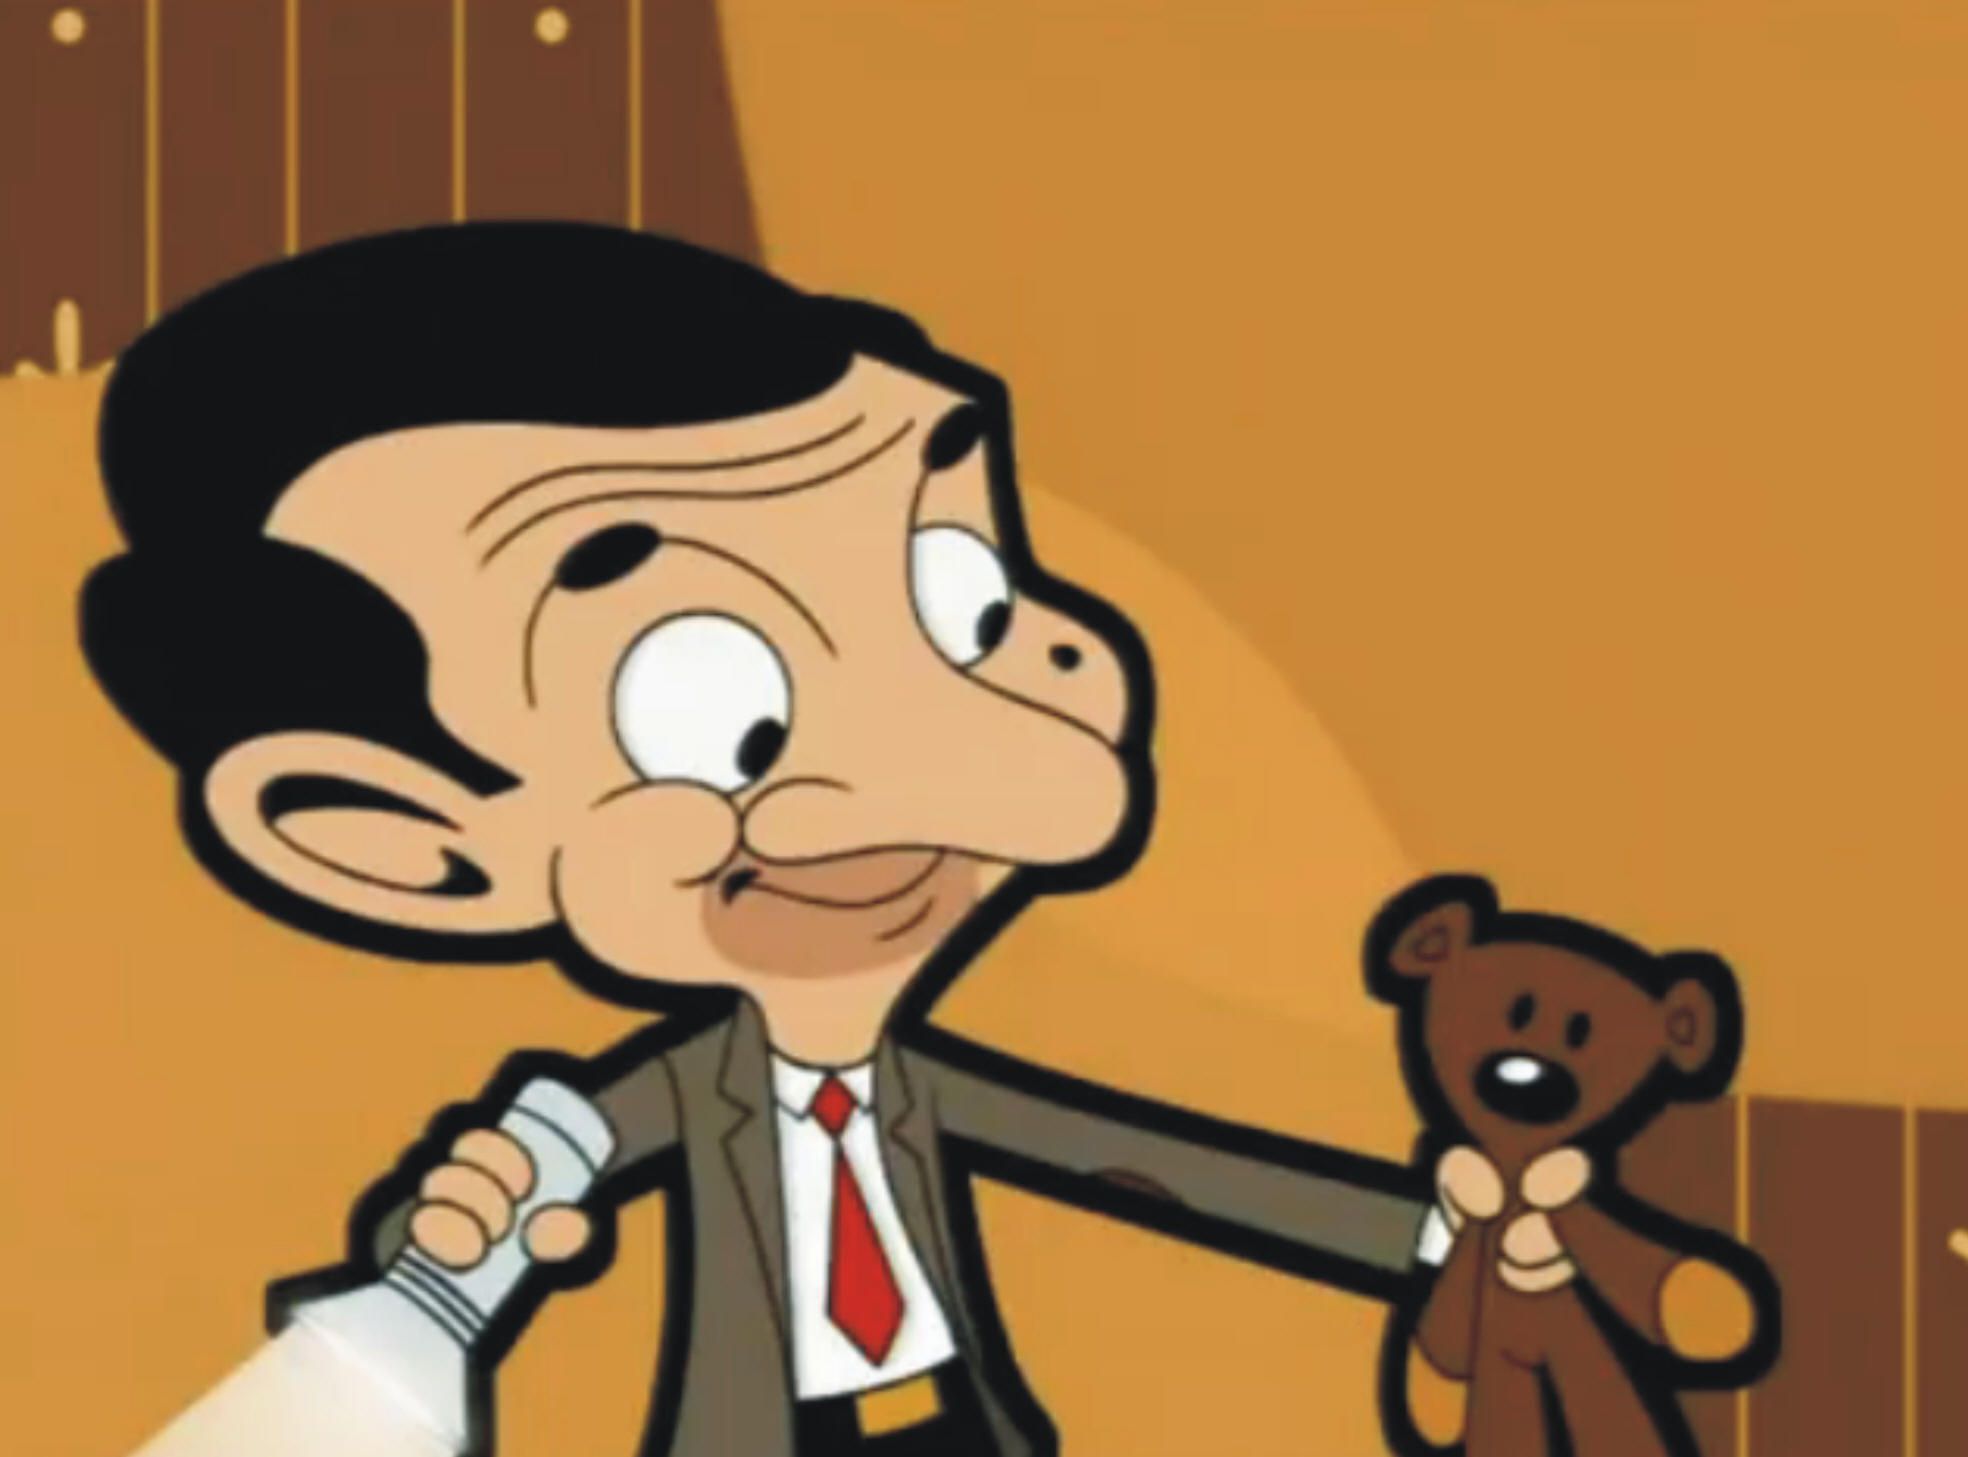 Mr Bean Animated Tv Show. Mr Bean Funny, Mr Bean, Mr Bean Cartoon